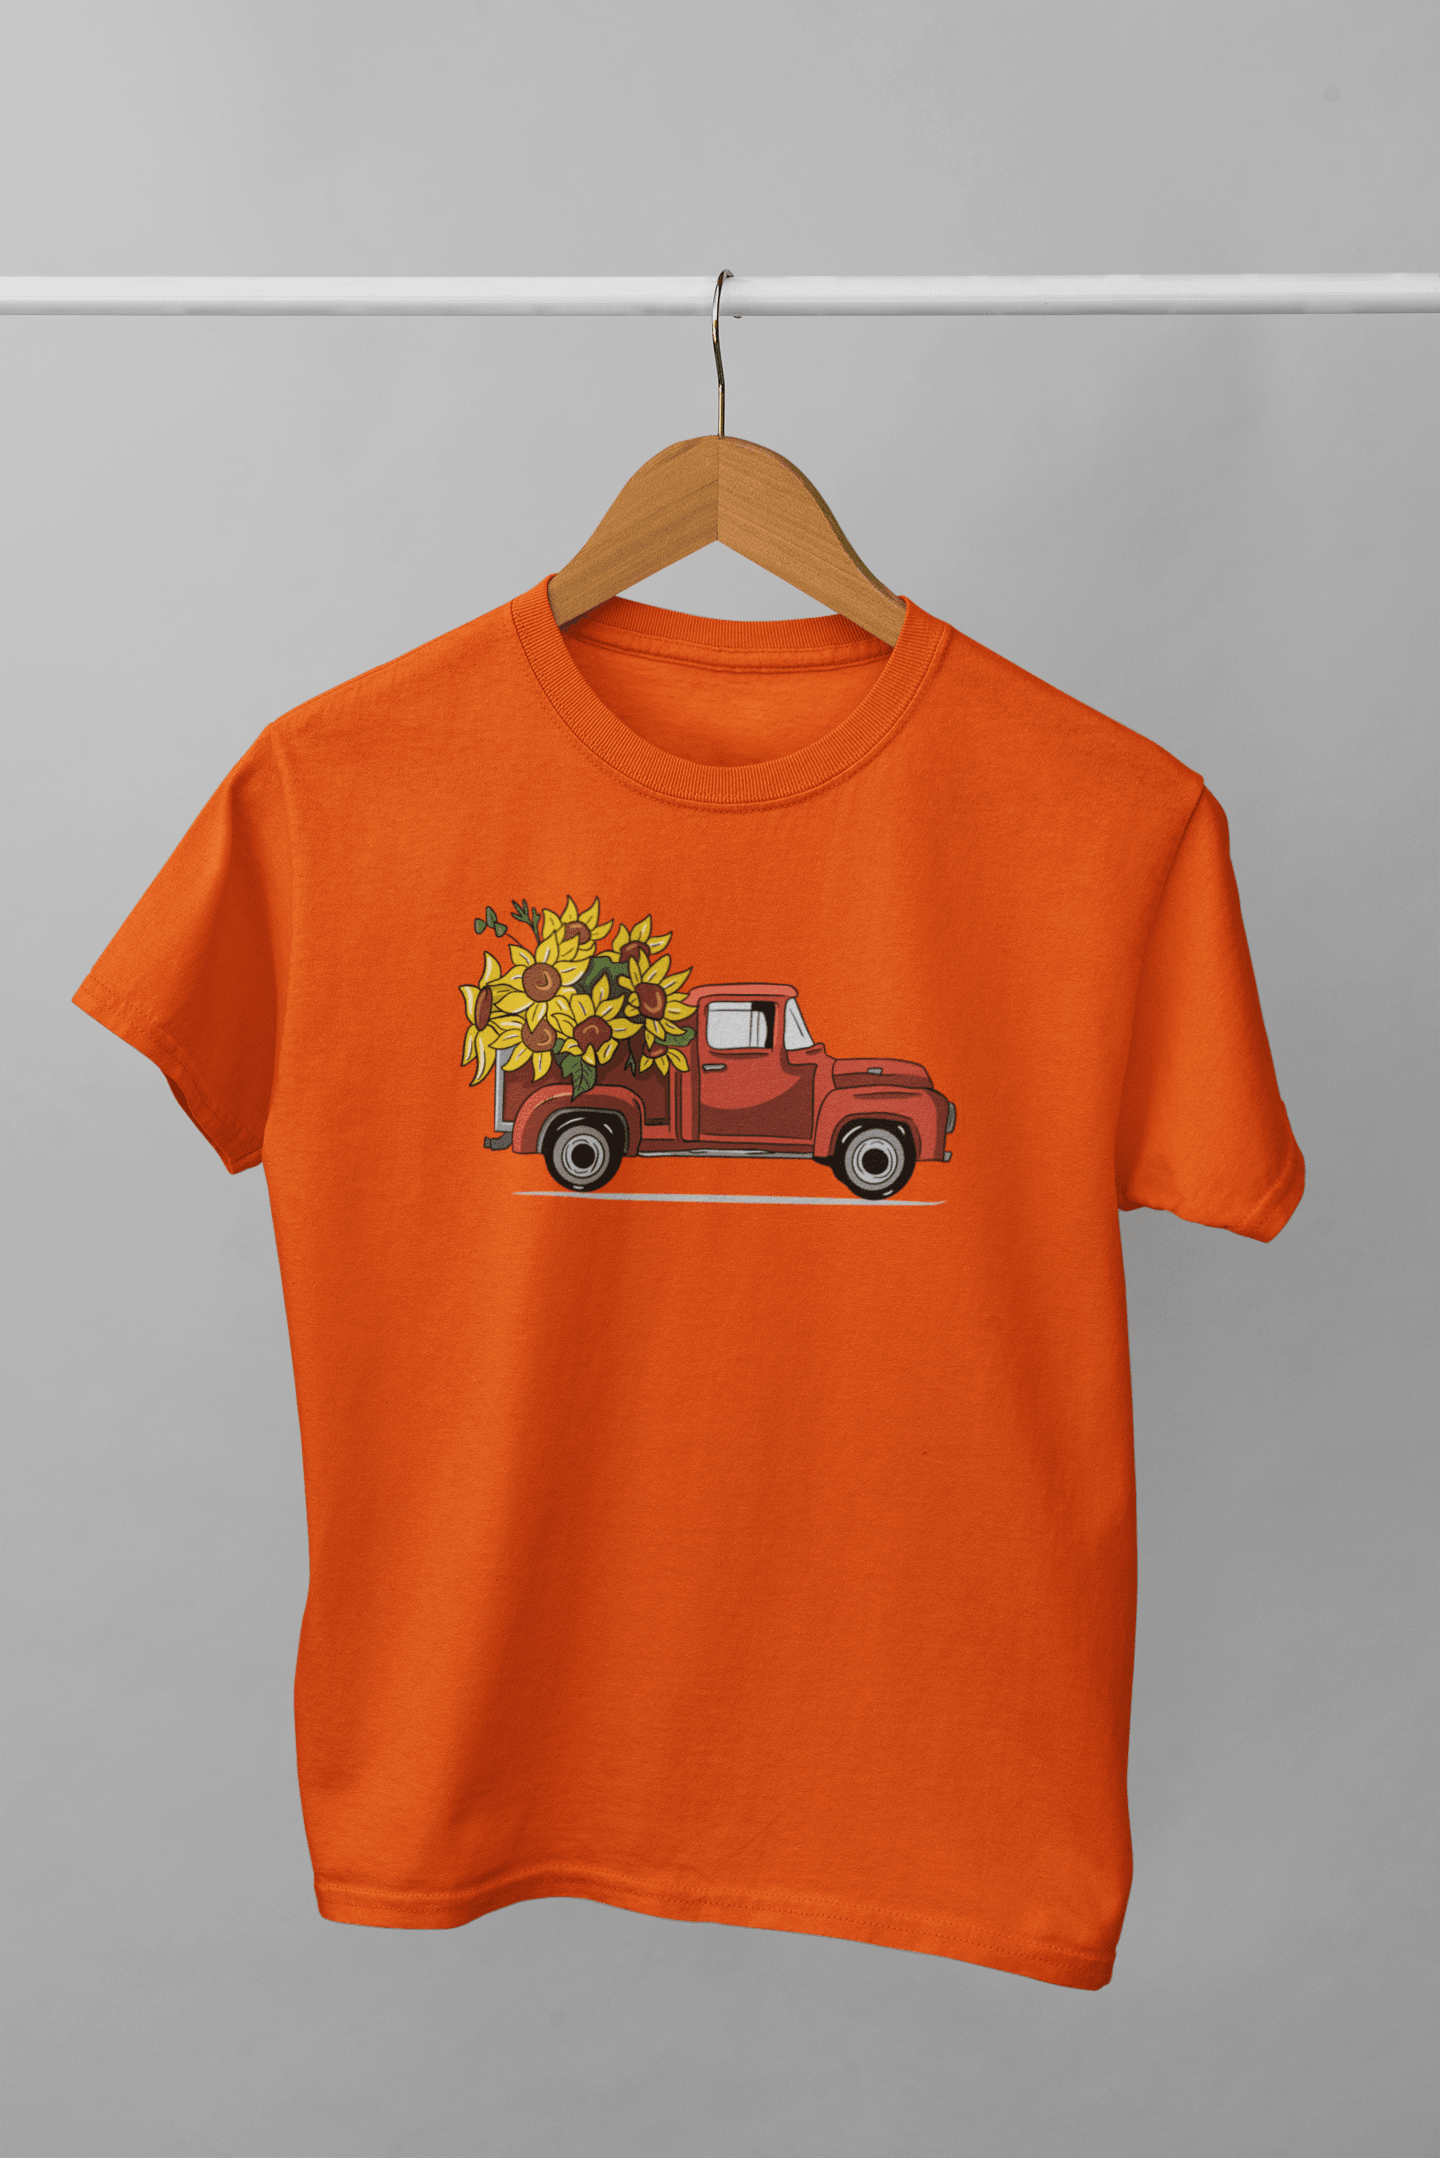 Gündendi Arabası (Çocuk Tişörtü)